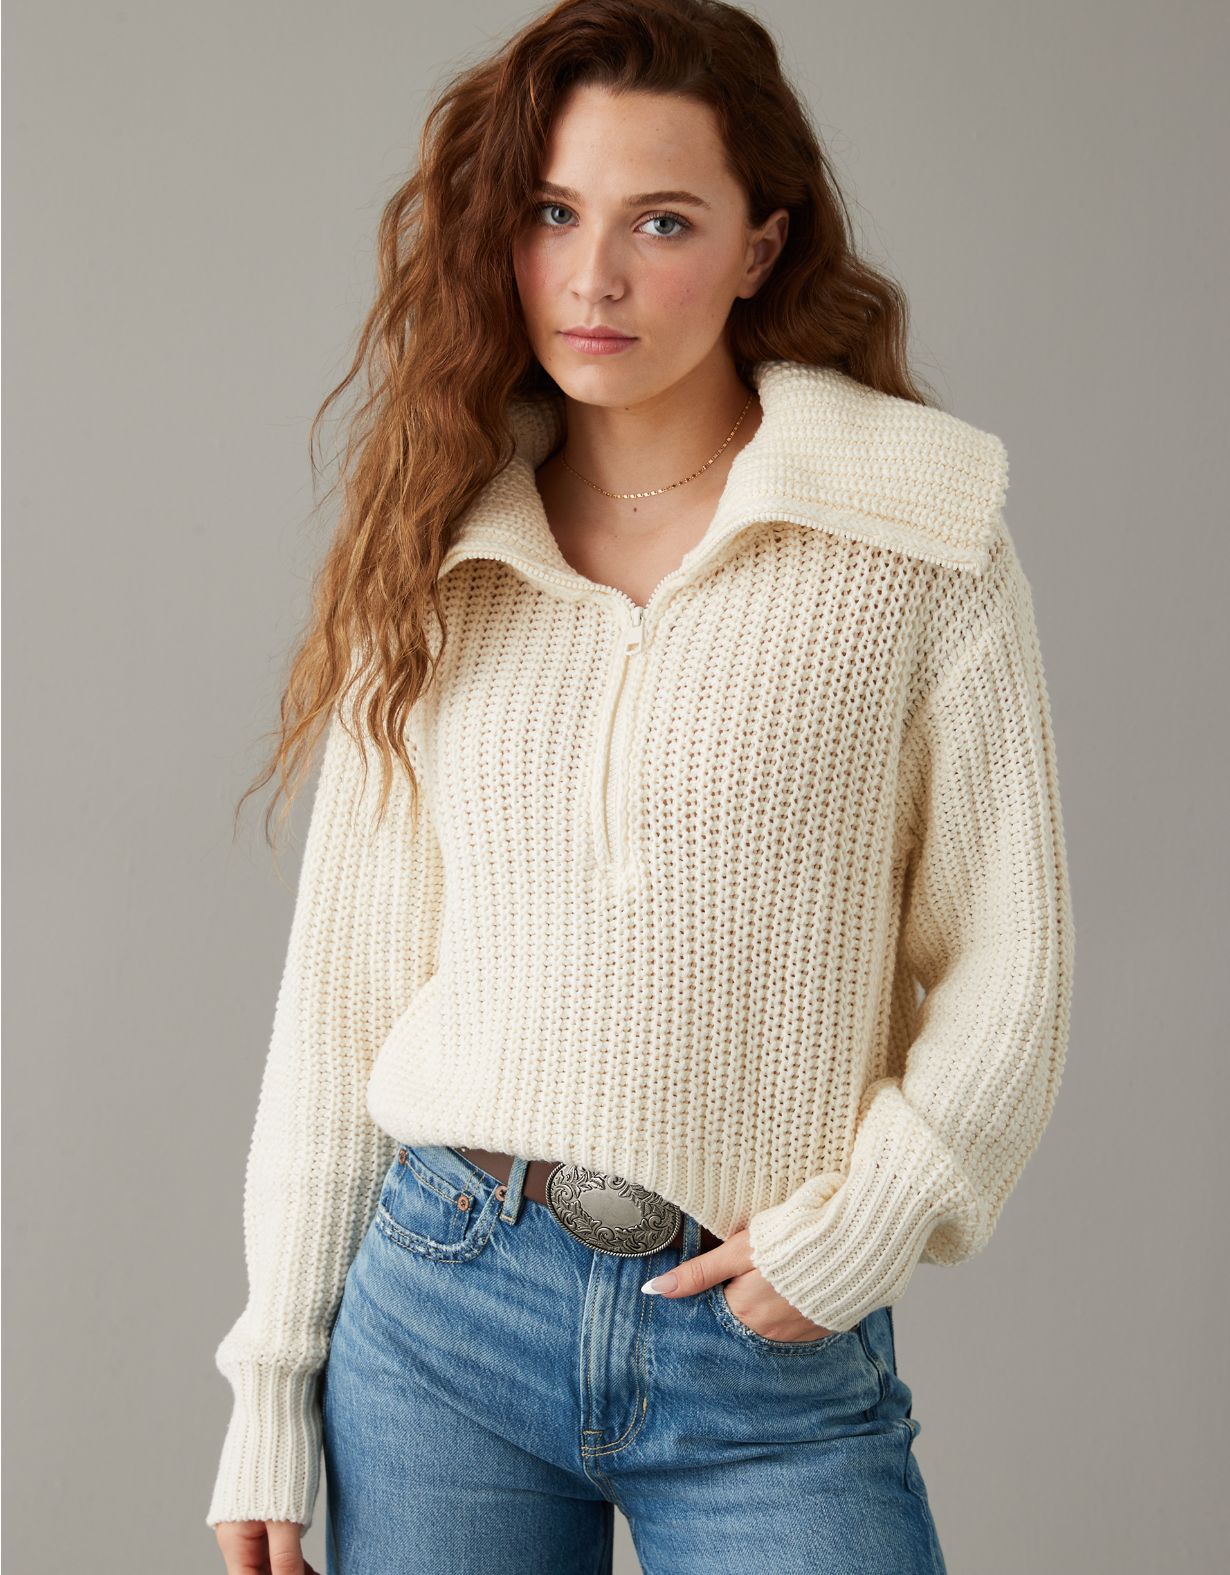 AE Quarter-Zip Collared Sweater